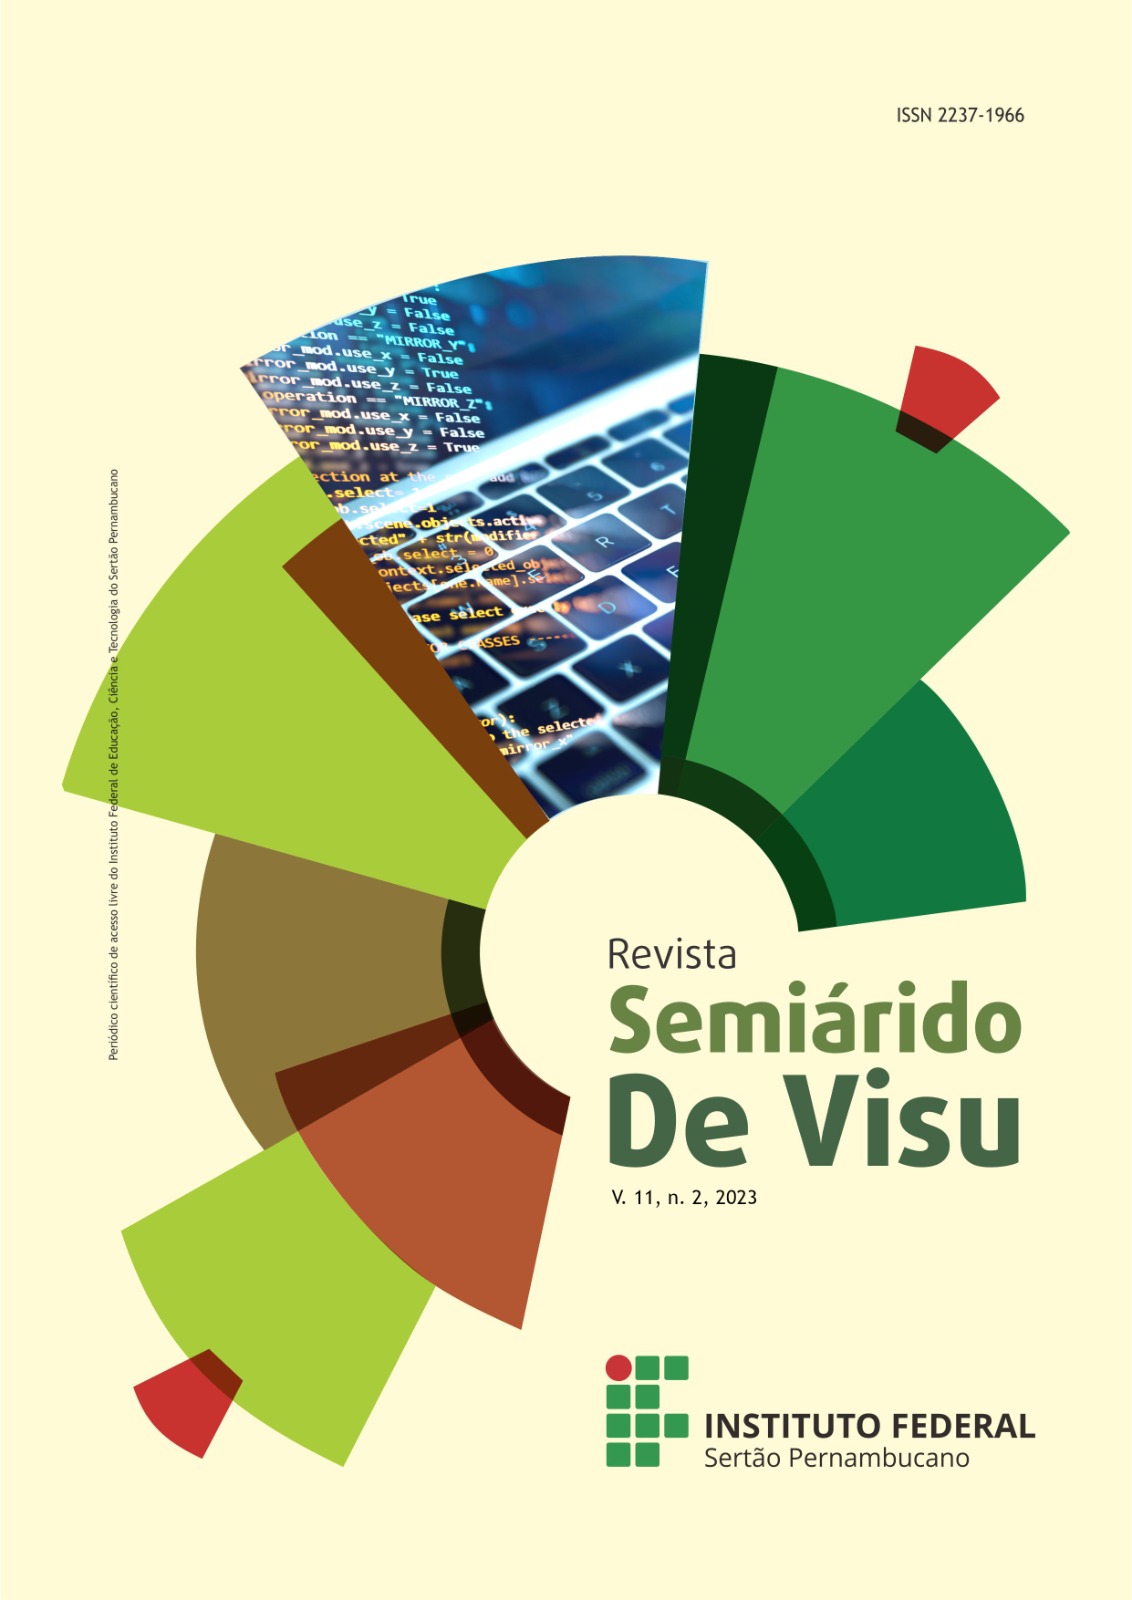 					View Vol. 11 No. 2 (2023): Revista Semiárido De Visu - v. 11, n. 2, 2023
				